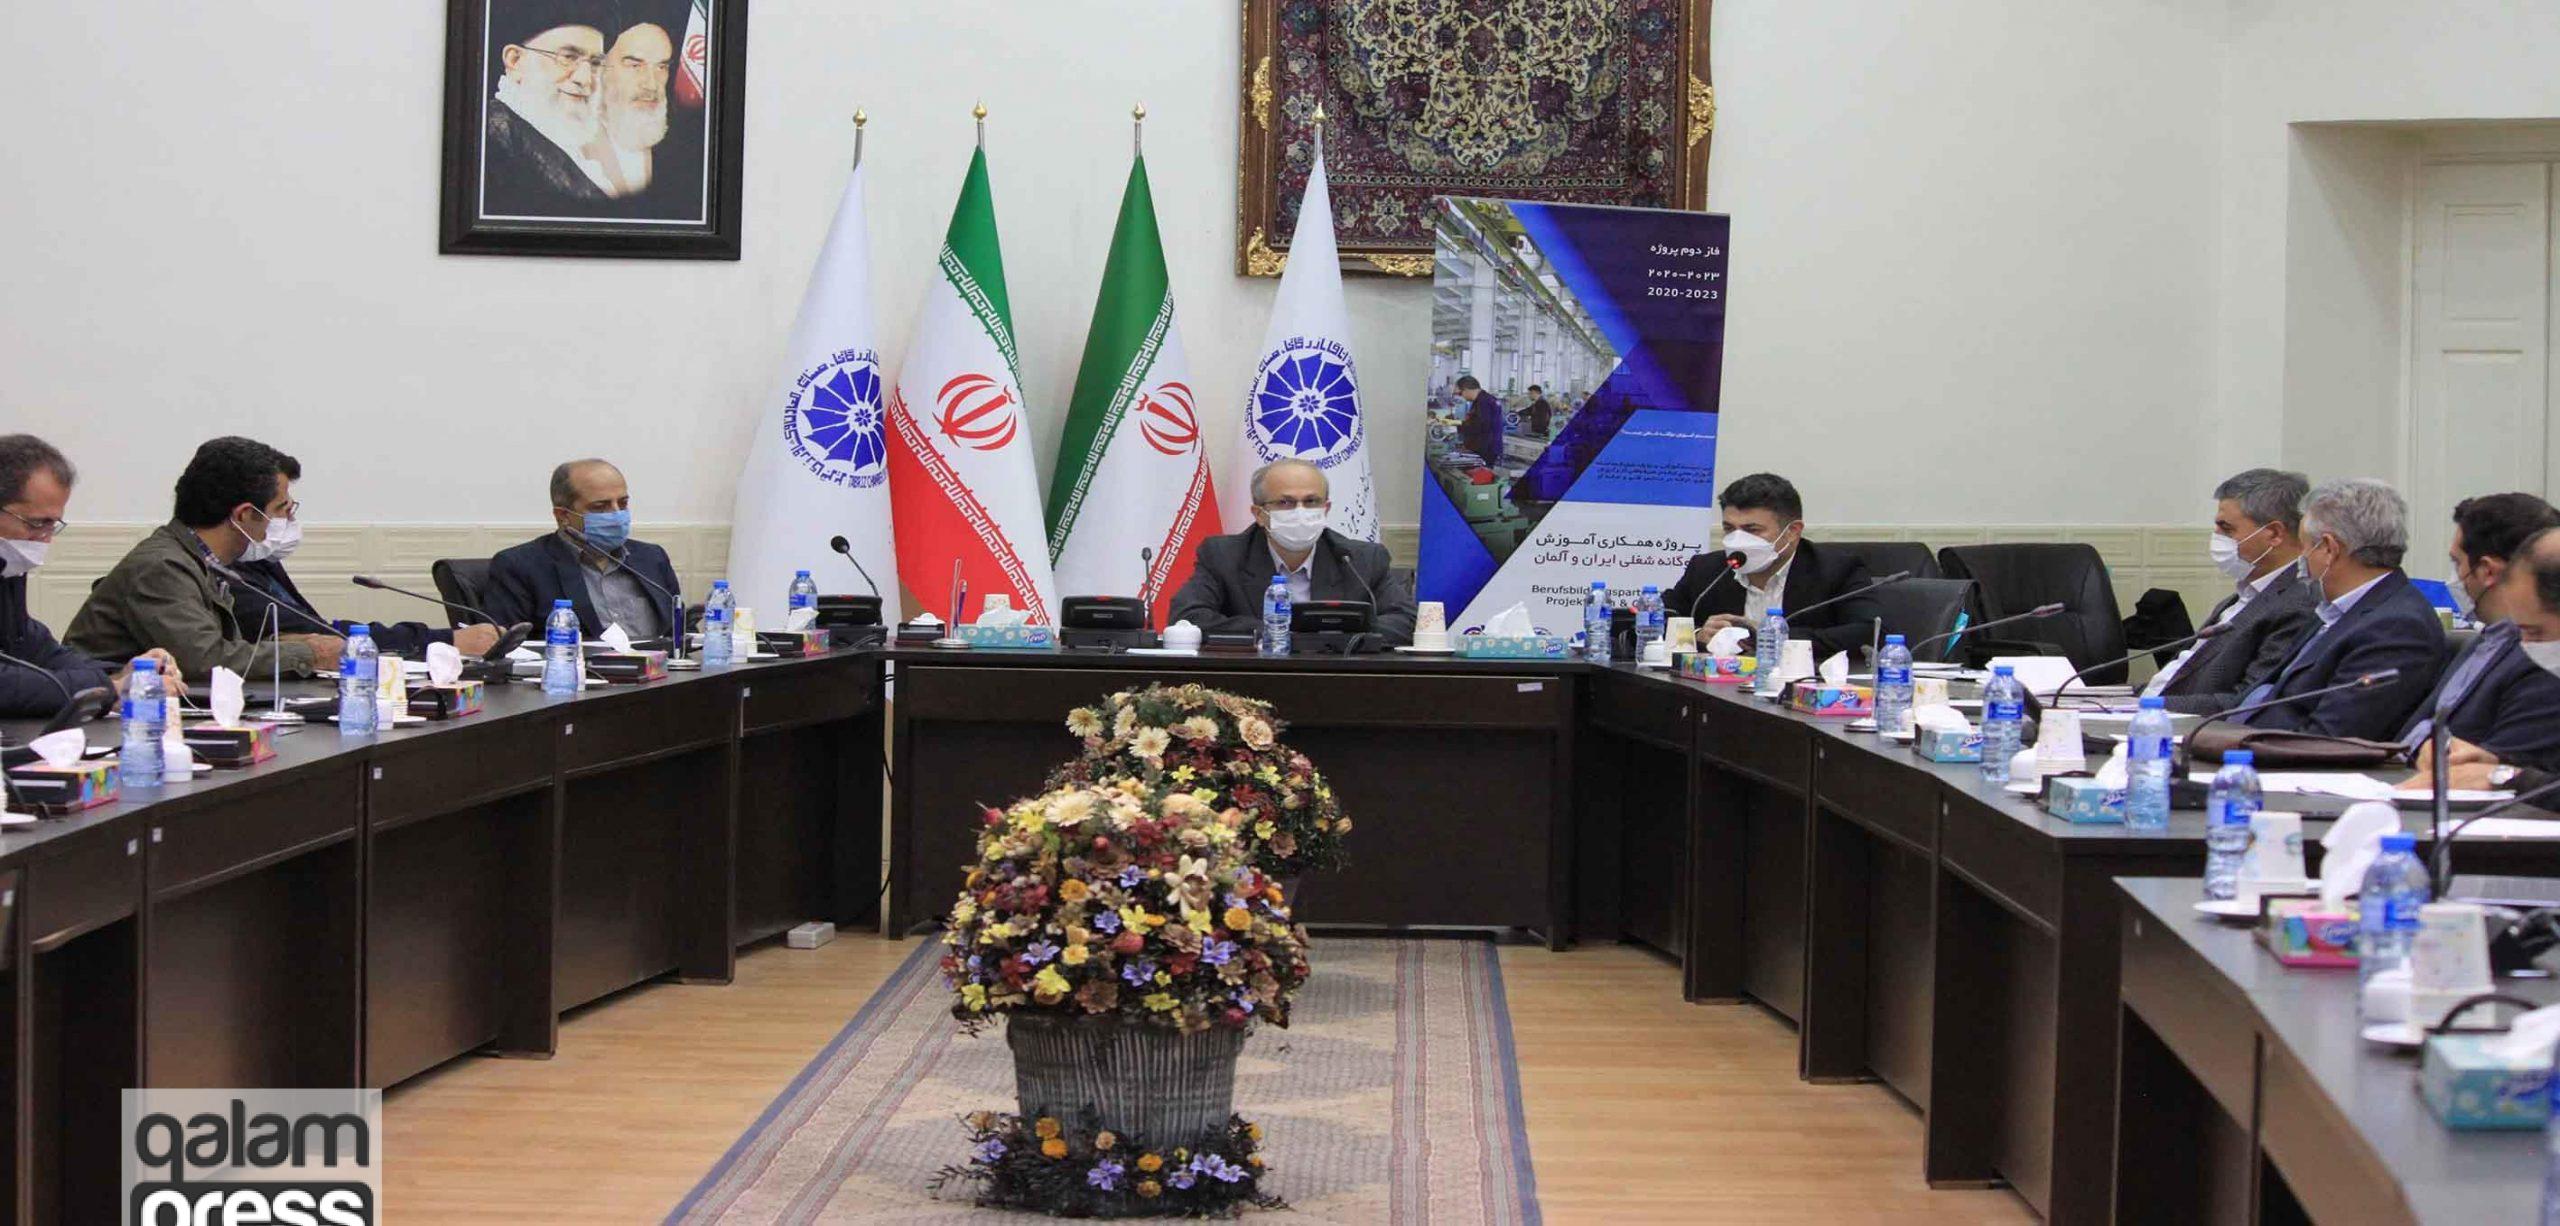 عملیاتی فاز دوم پروژه همکاری آموزش دوگانه شغلی ایران و آلمان در تبریز